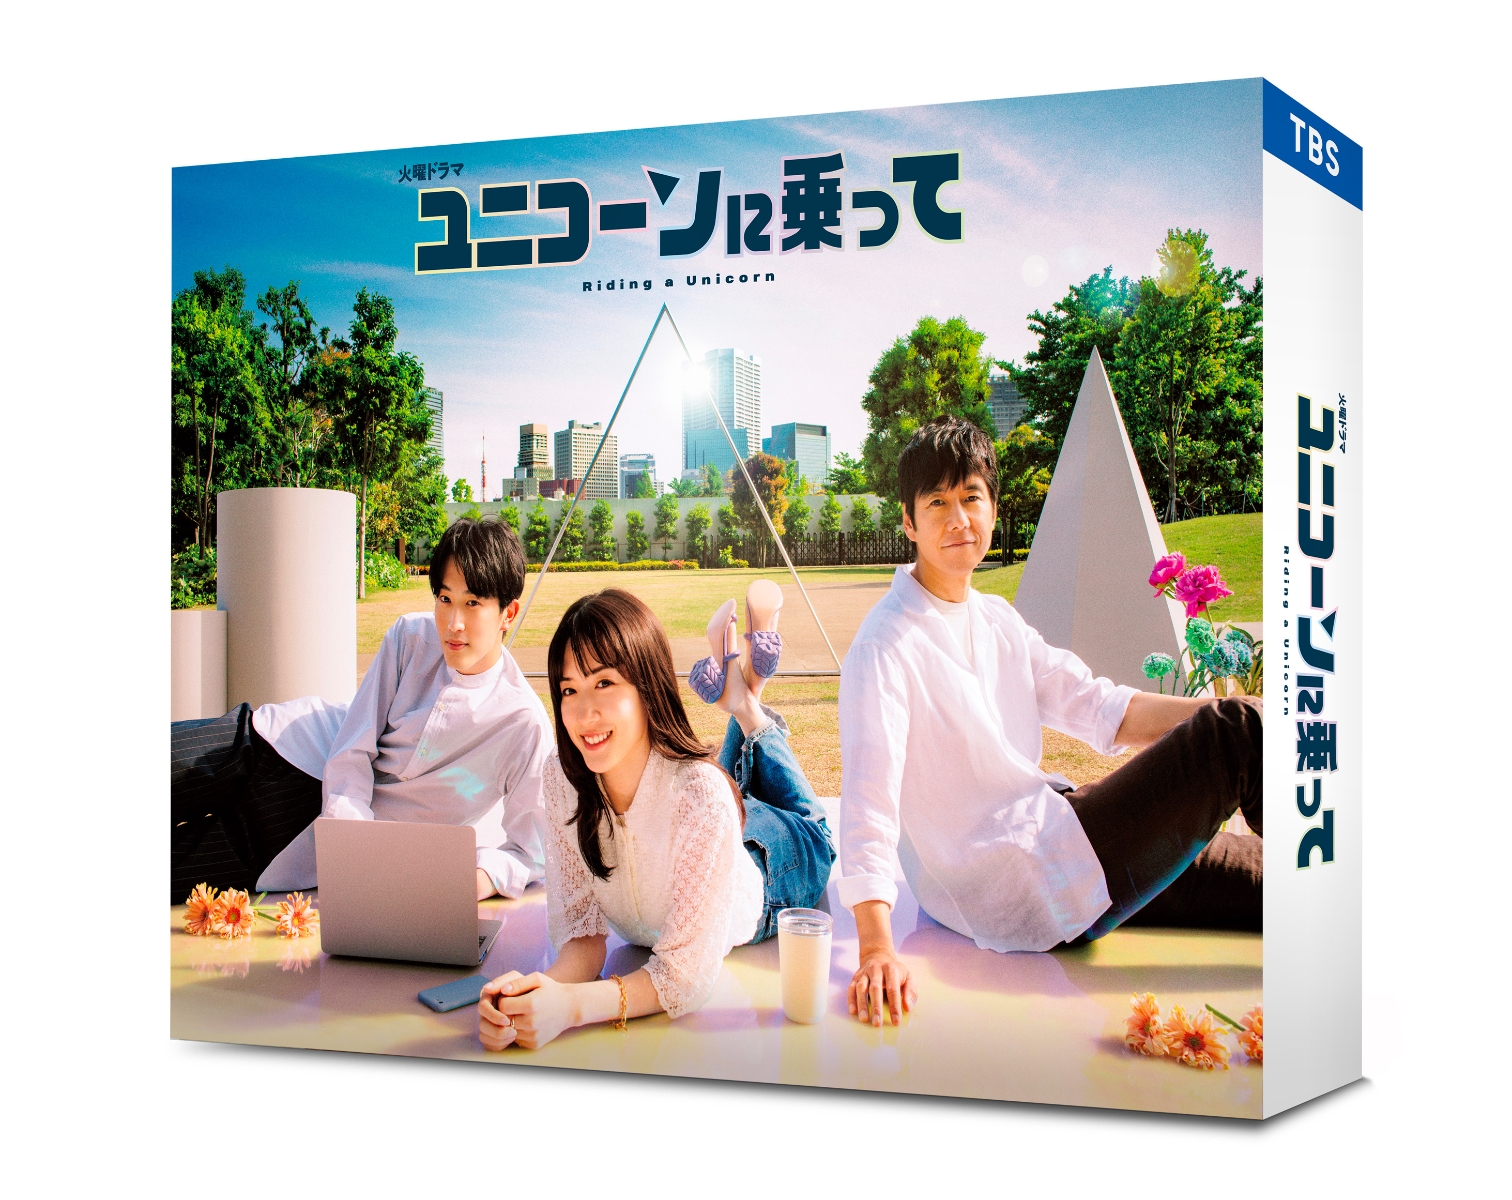 楽天ブックス: ユニコーンに乗って Blu-ray BOX【Blu-ray】 - 永野芽郁